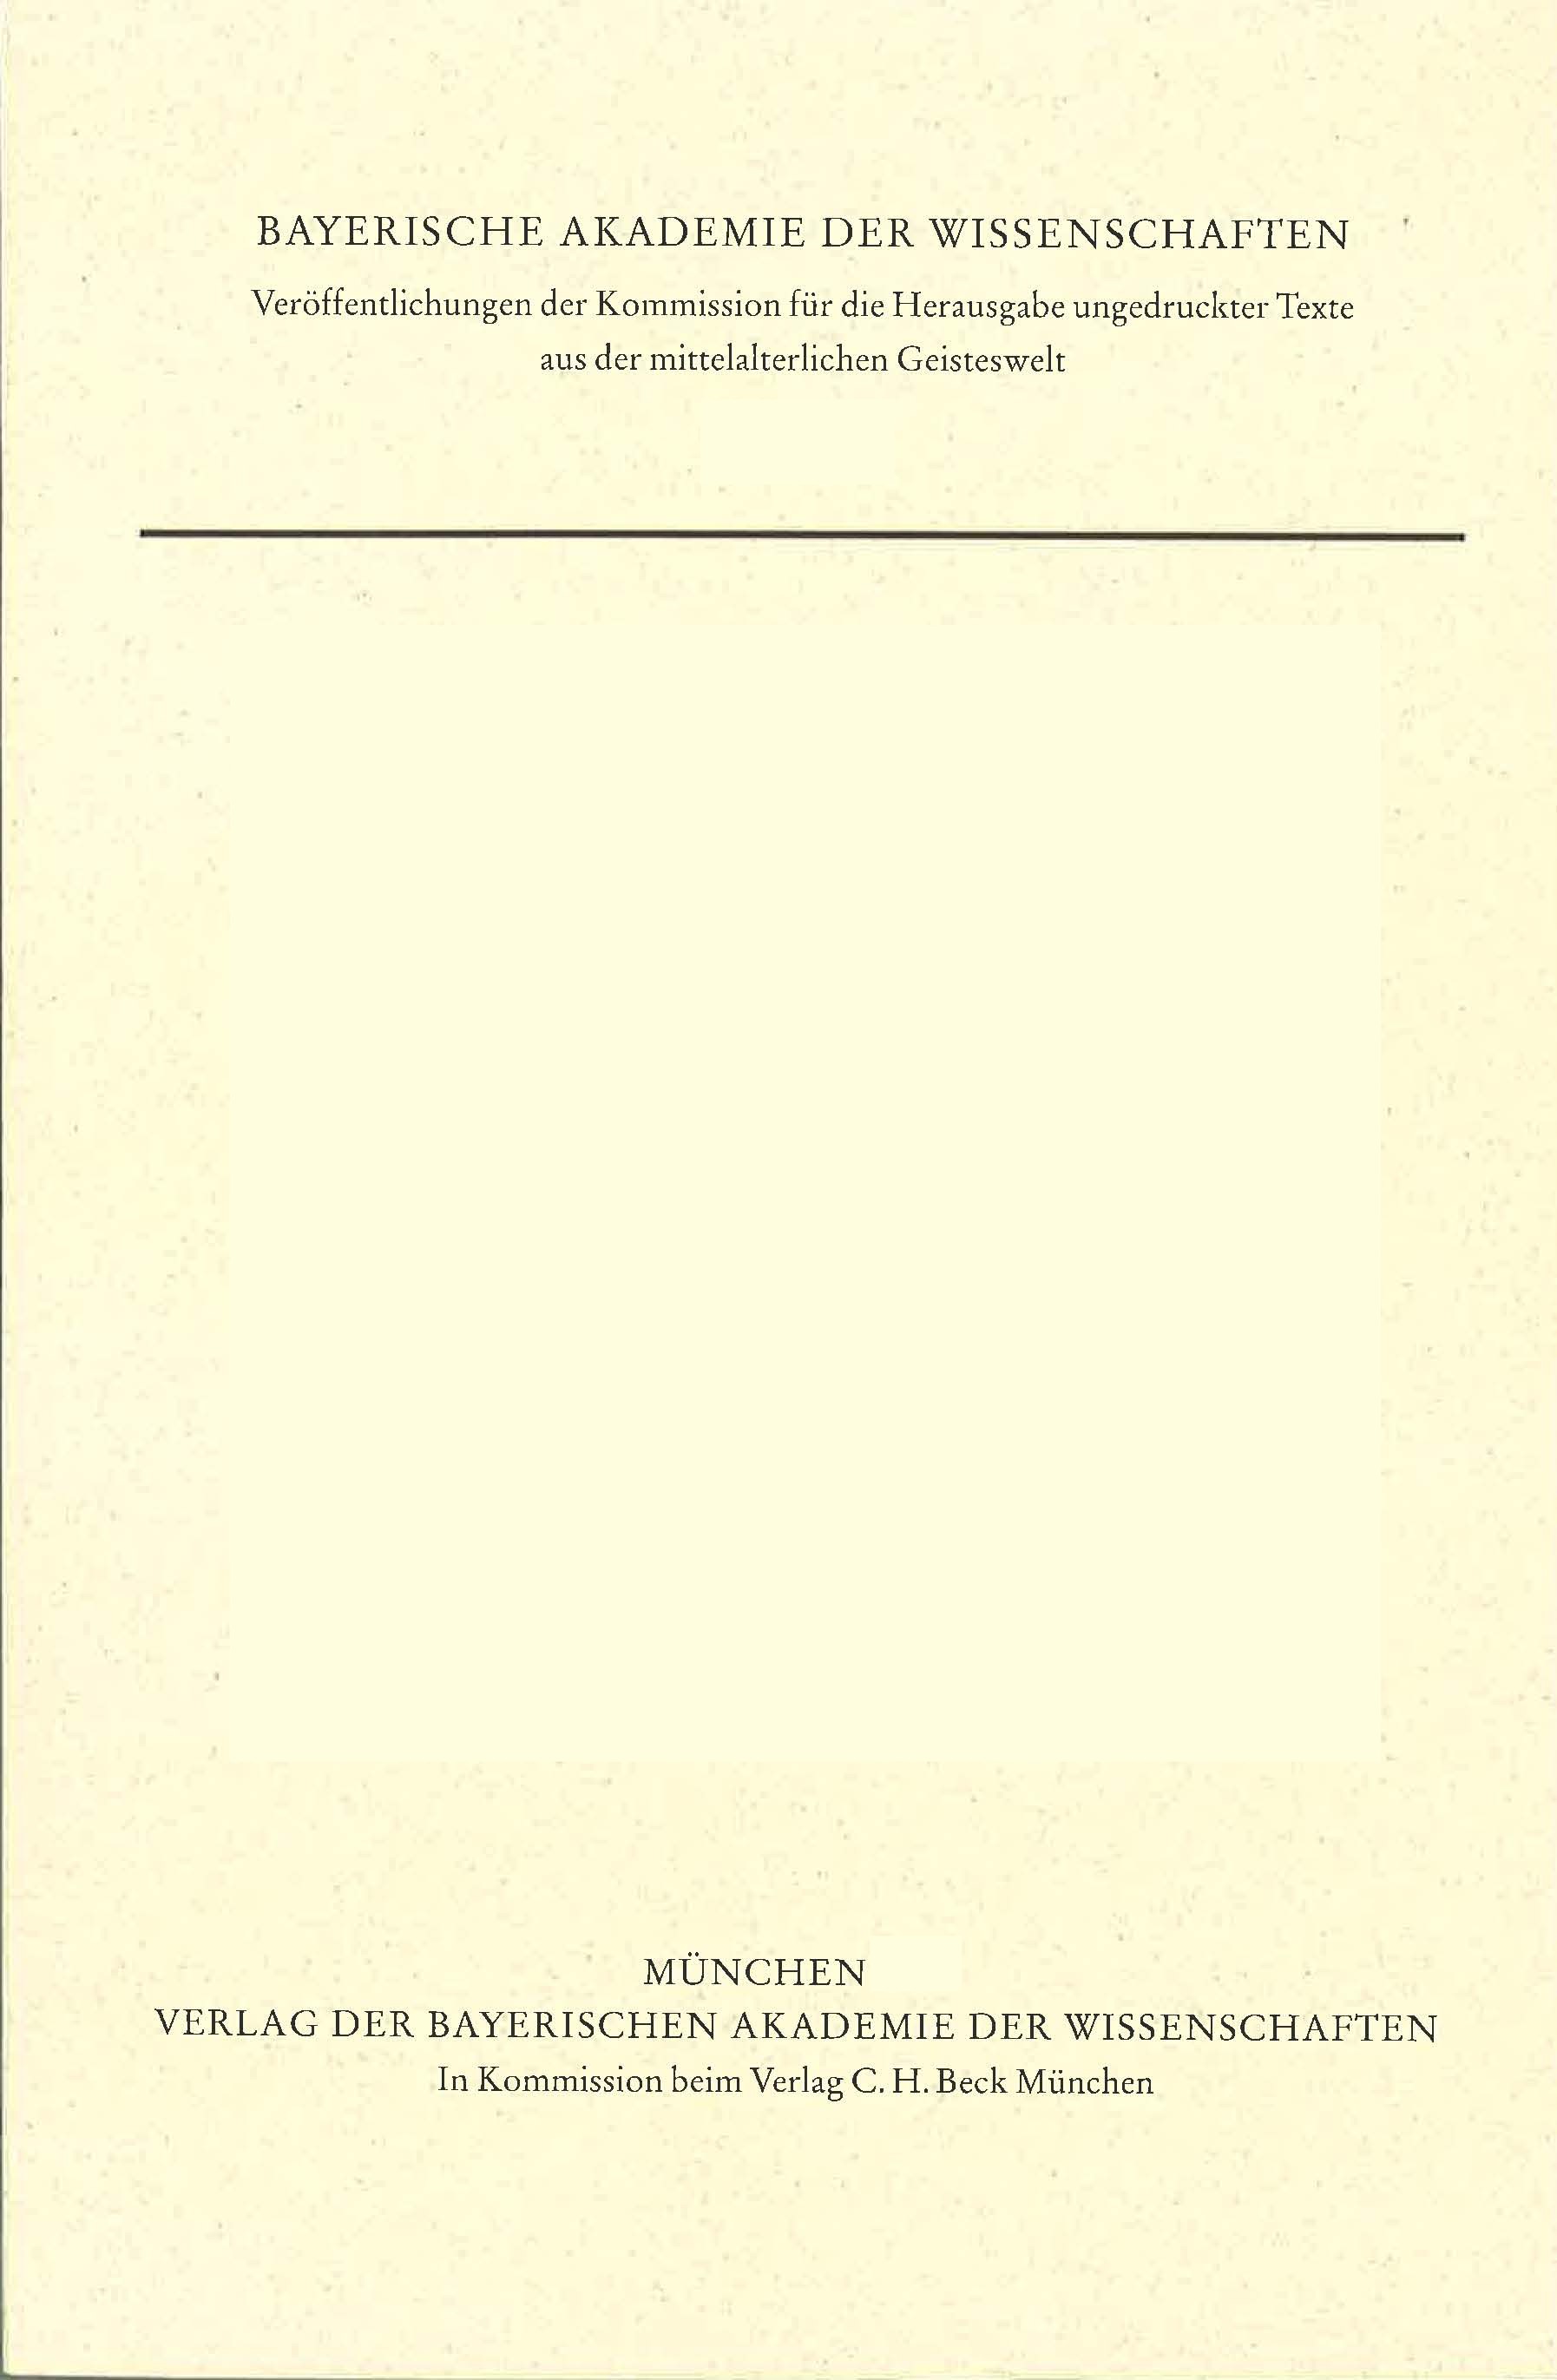 Cover: Schrama, Martijn, Gabriel Biel en zijn Leer over de Allerheiligste Drie vuldigheid volgens het eerste Boek van zijn Collectorium